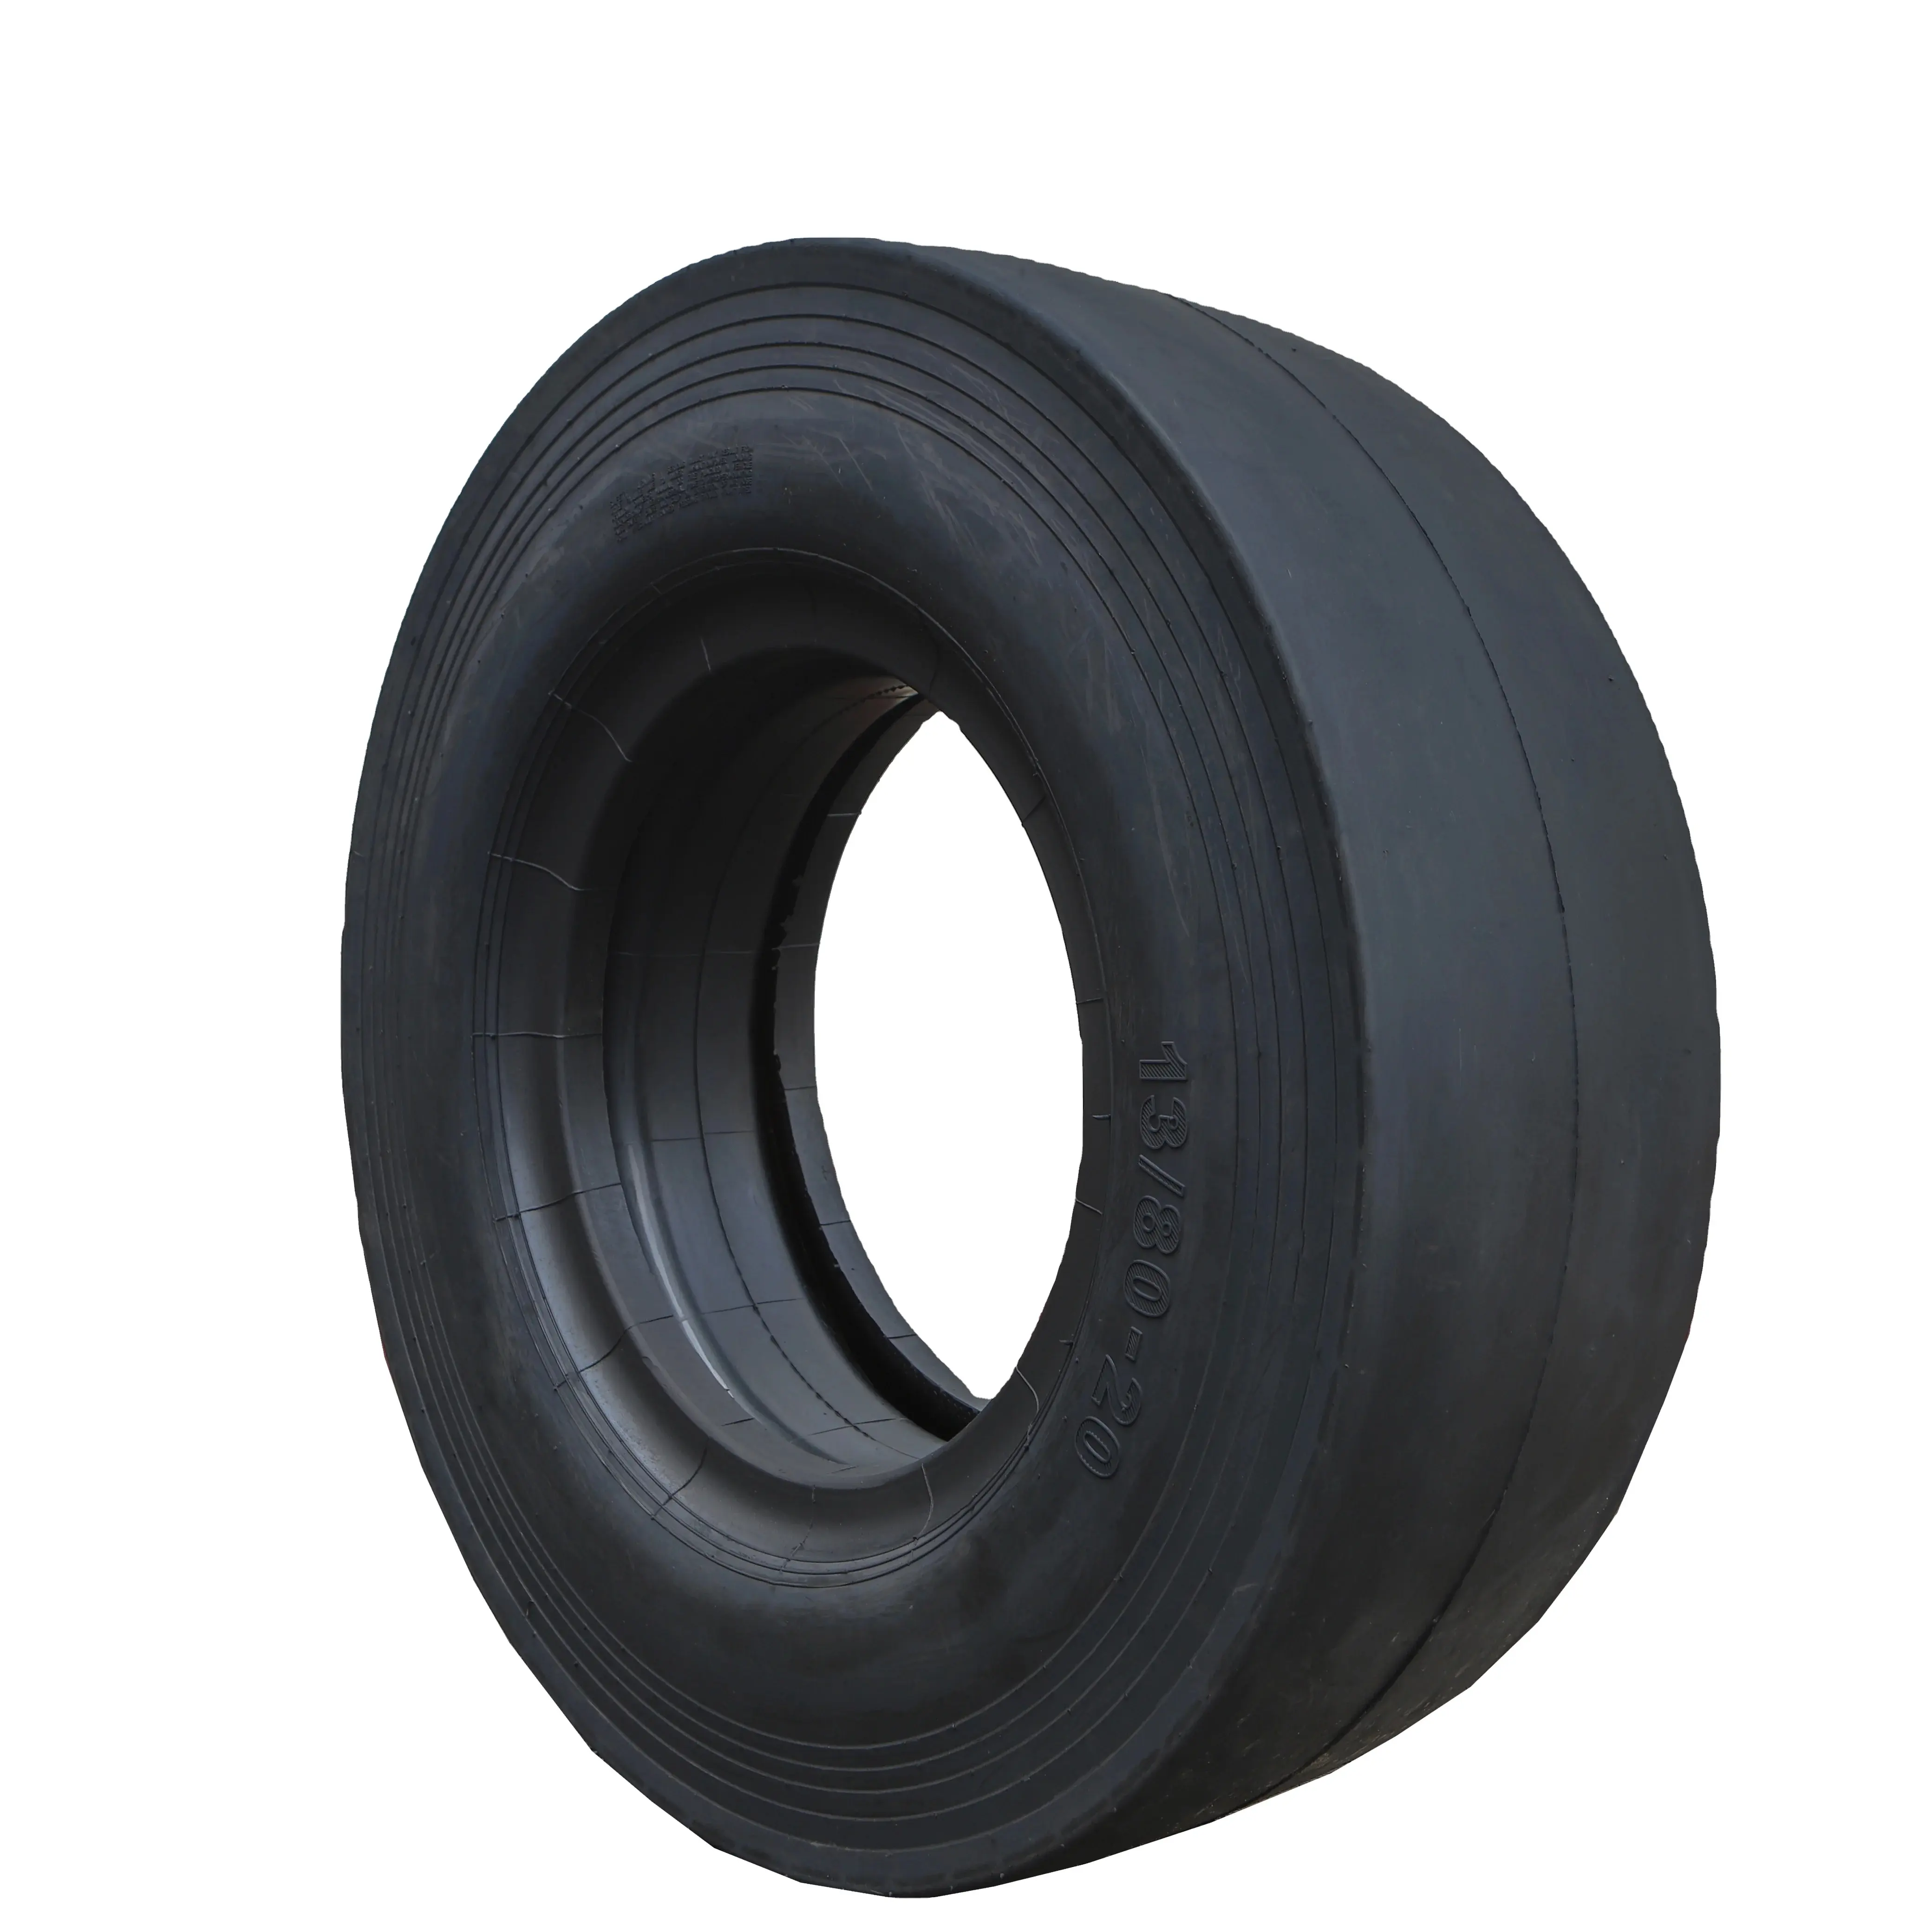 Neumáticos lisos 9,5/65-15 10,5/80-16 7,50 9,00-16 11,00-20 12,00-20 13/80-20 14/70-20-20 OTR Neumático Off the road neumático de carretera de dos ruedas